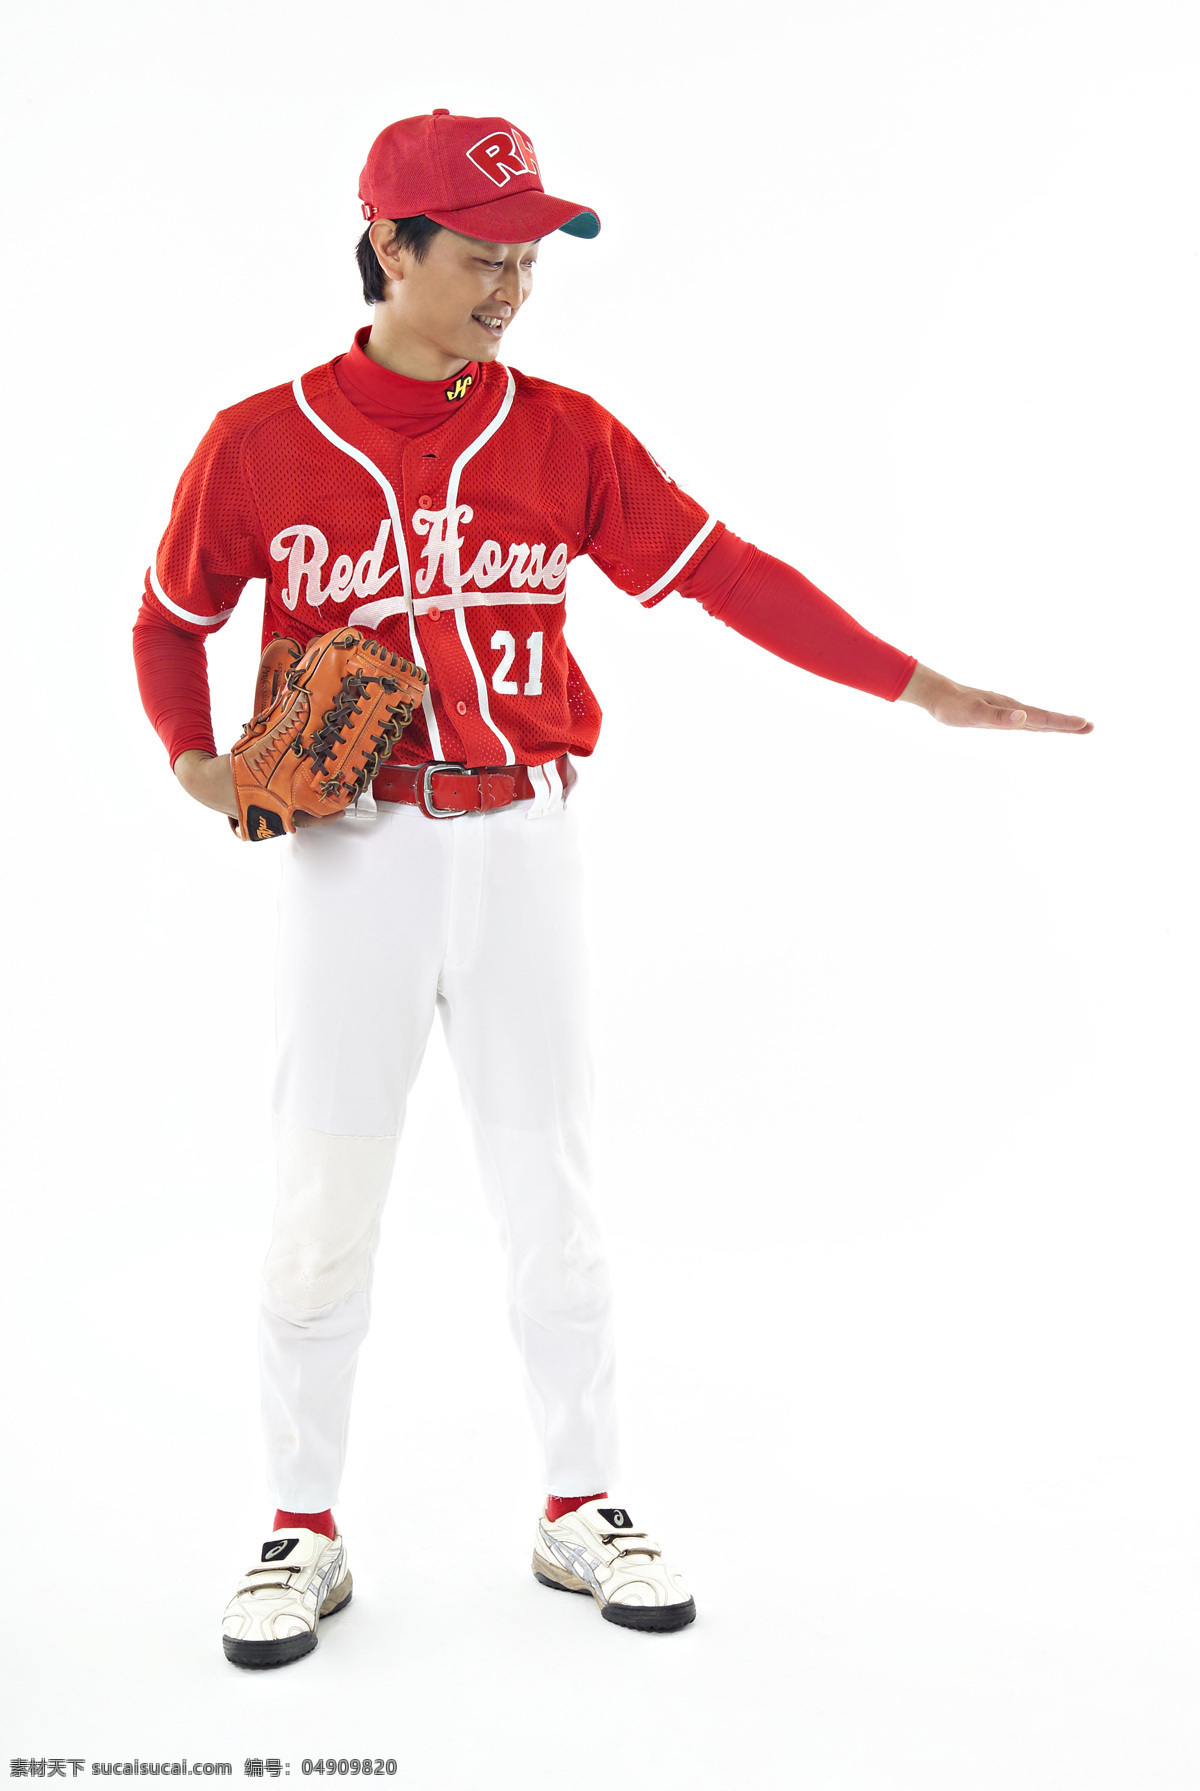 棒球运动 棒球 运动 击球 准备 打棒球 击球手 单纯背景 出击 男性 胜利 团队 文化艺术 体育运动 摄影图库